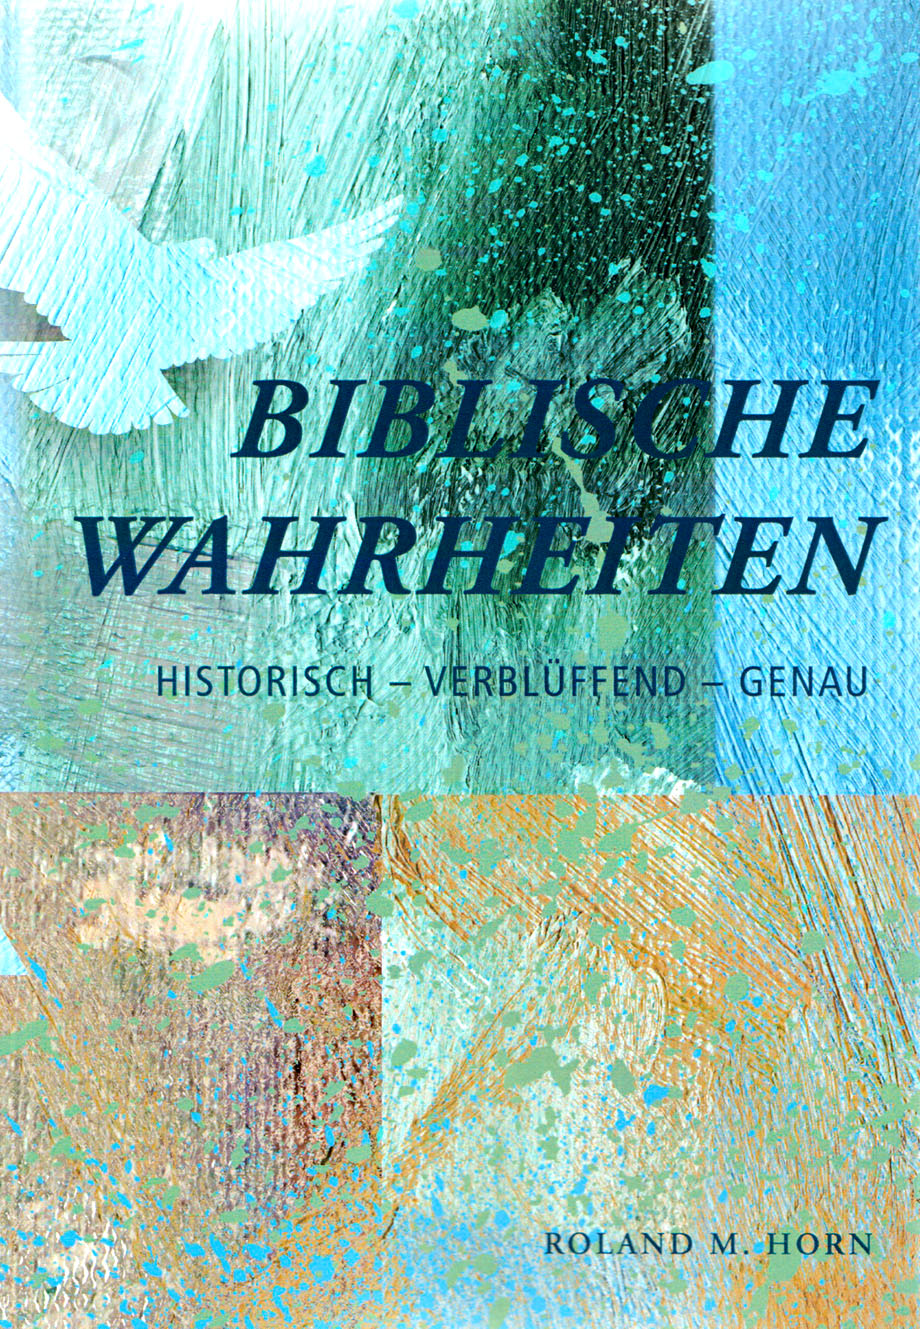 Roland M. Horn: Biblische Wahrheiten (Cover)